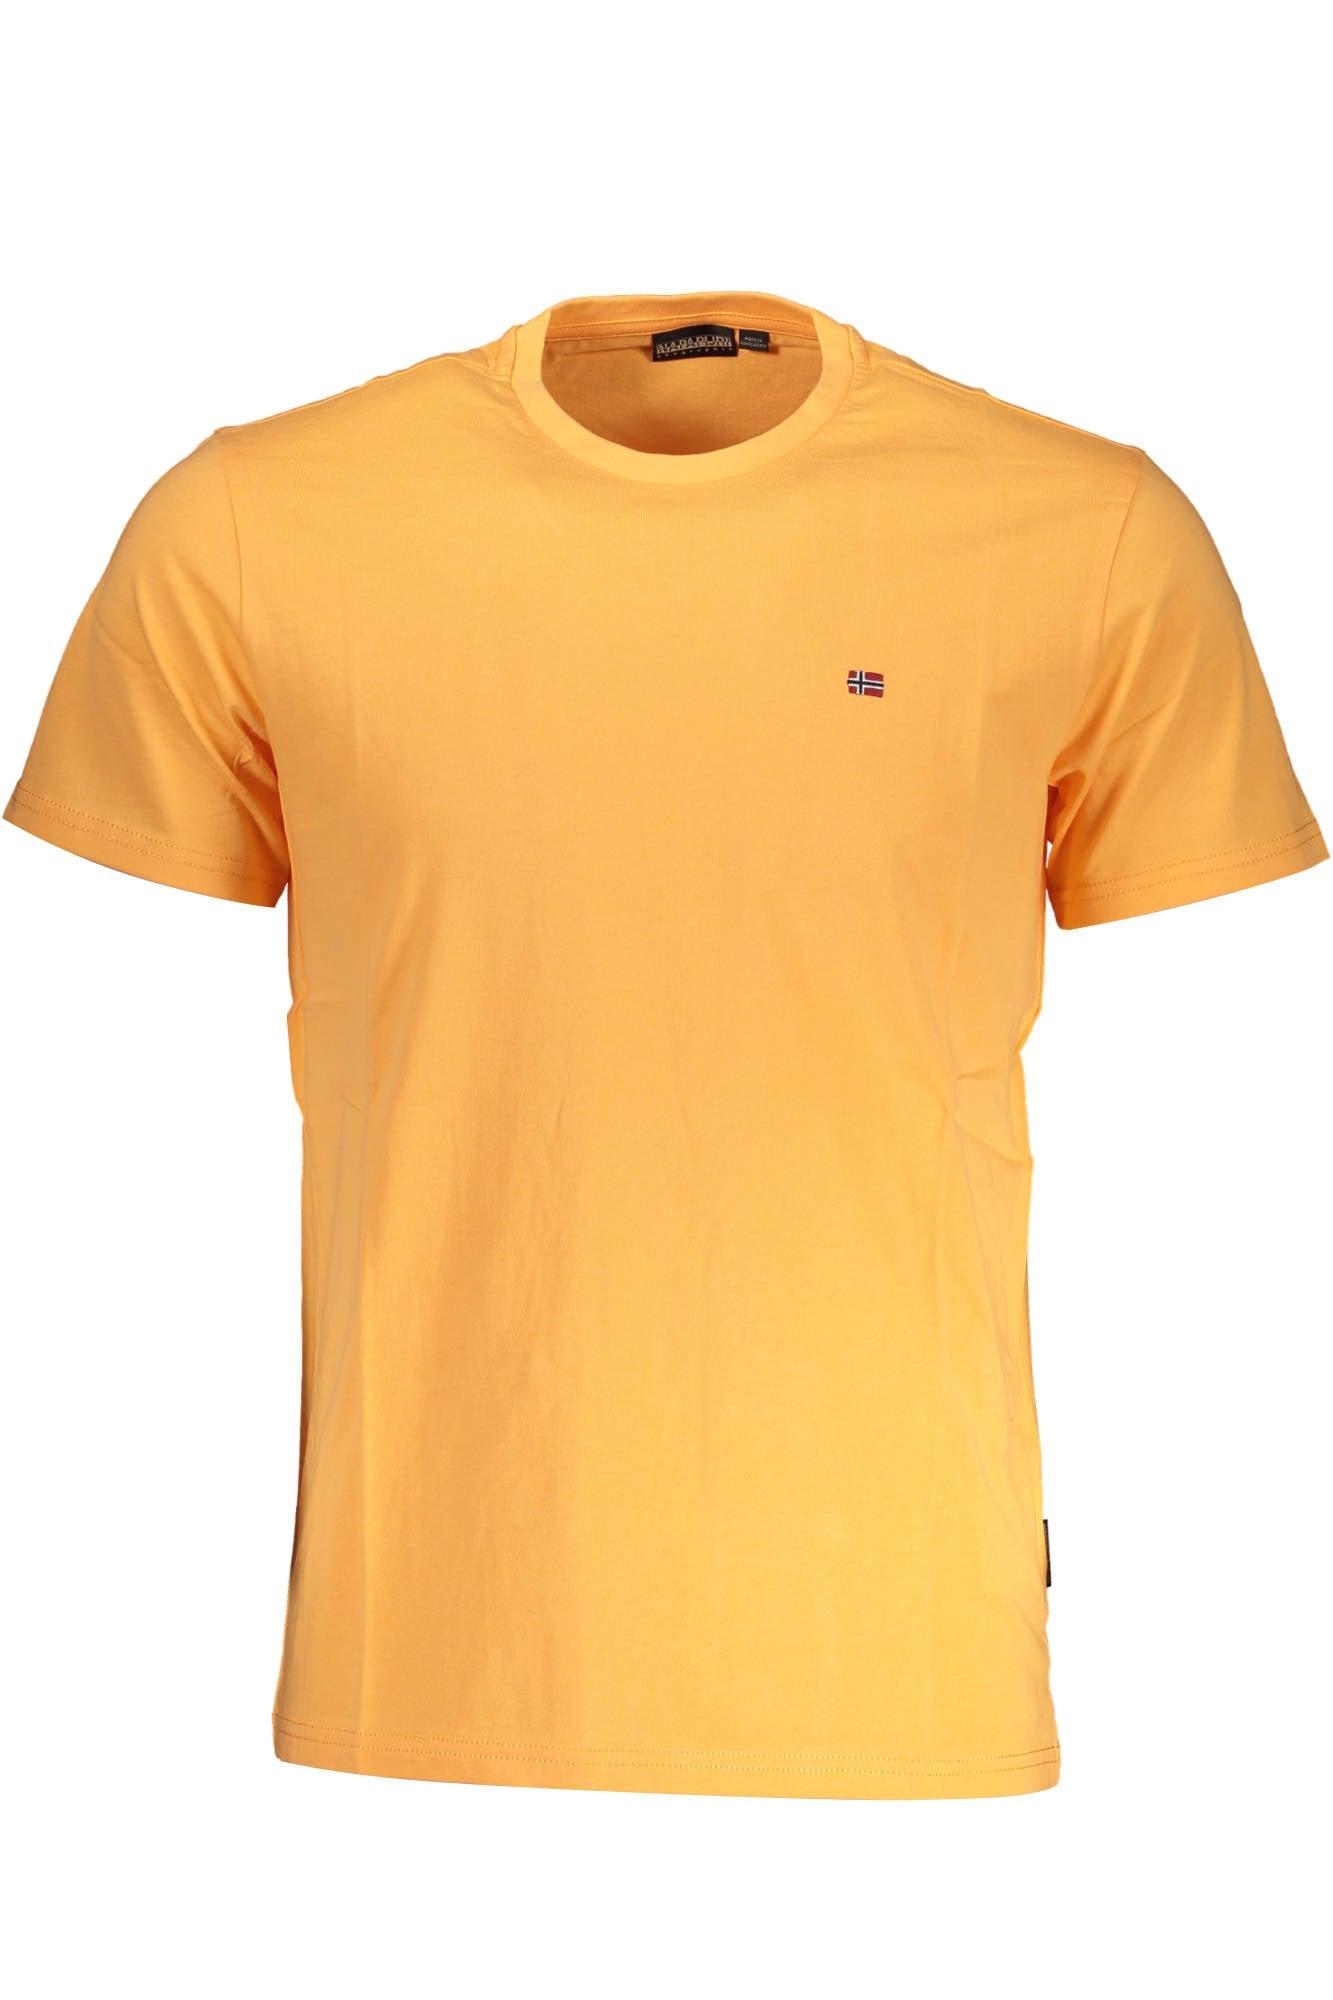 Napapijri Orange Cotton T-Shirt - Fizigo